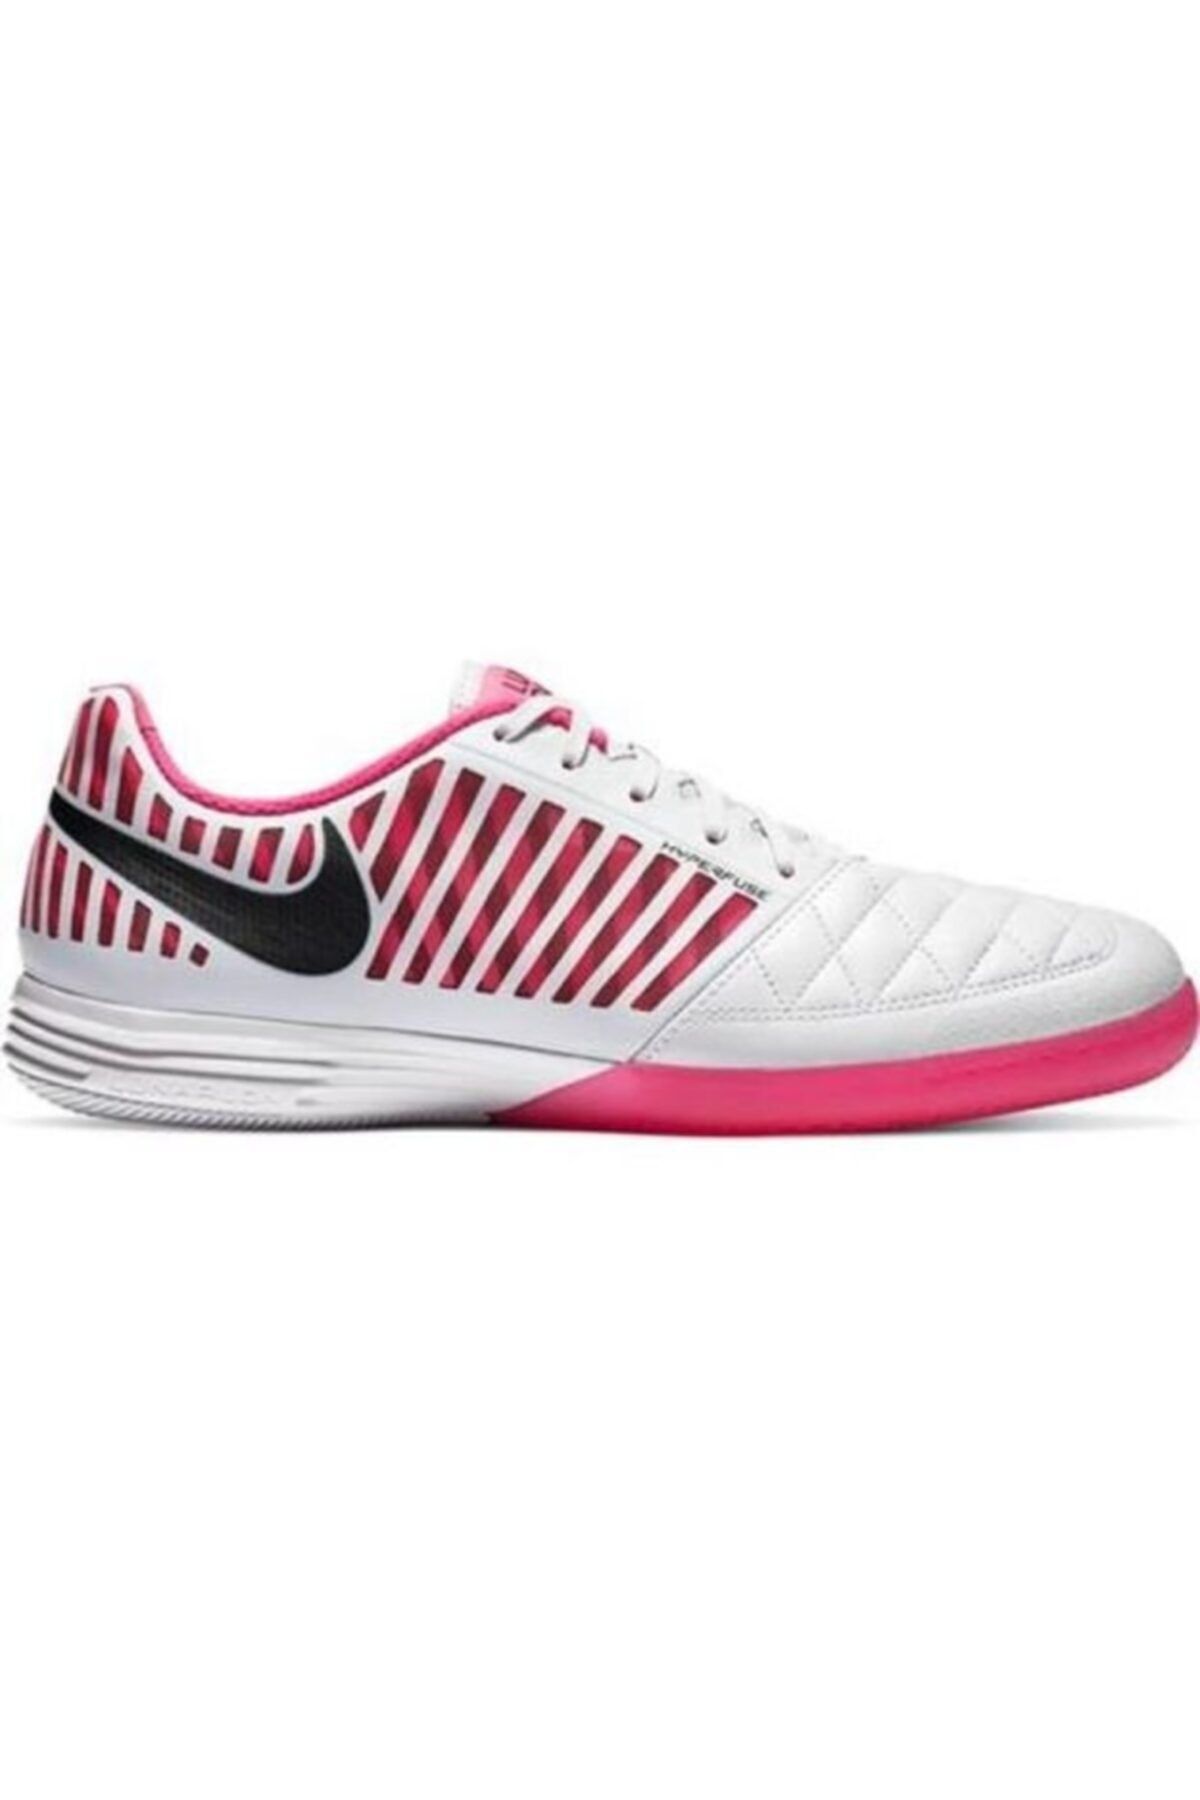 Nike 580456 006 Lunargato Iı Futsal-hentbol Salon Ayakkabısı